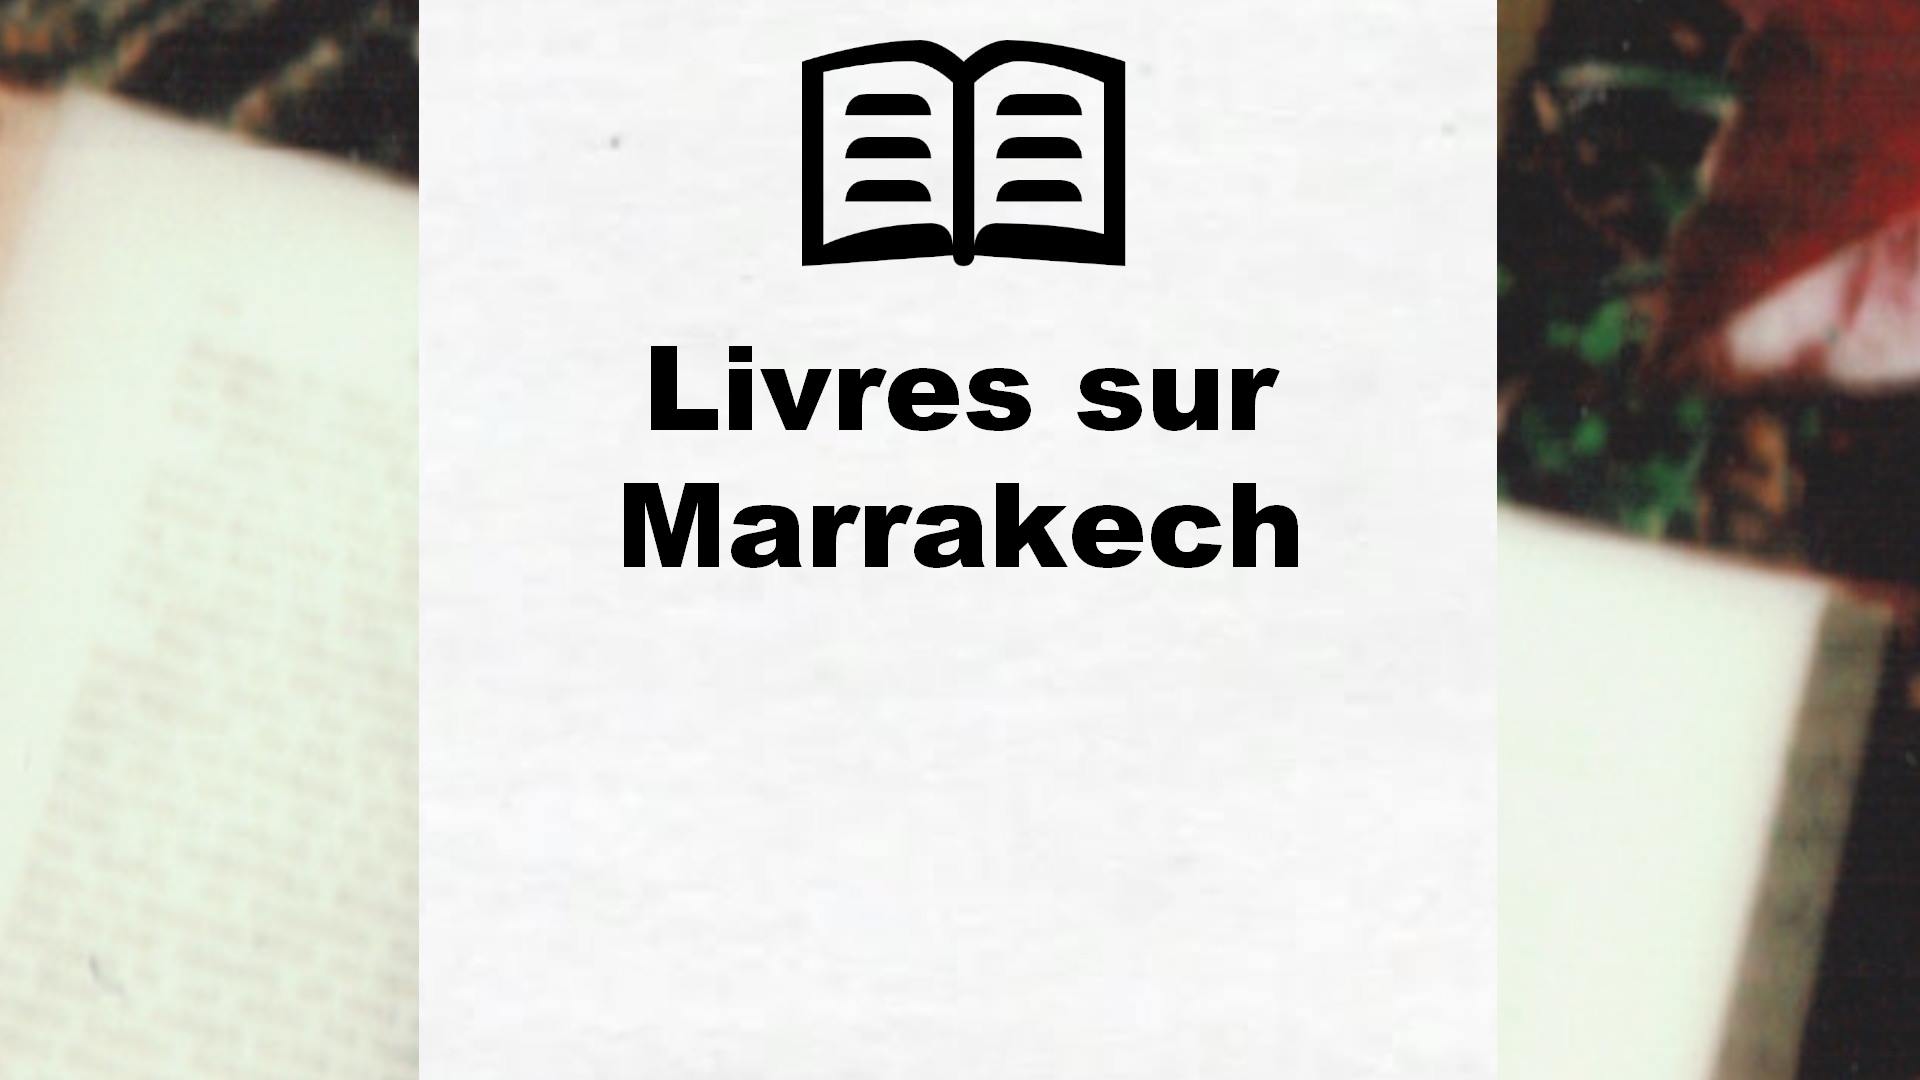 Livres sur Marrakech